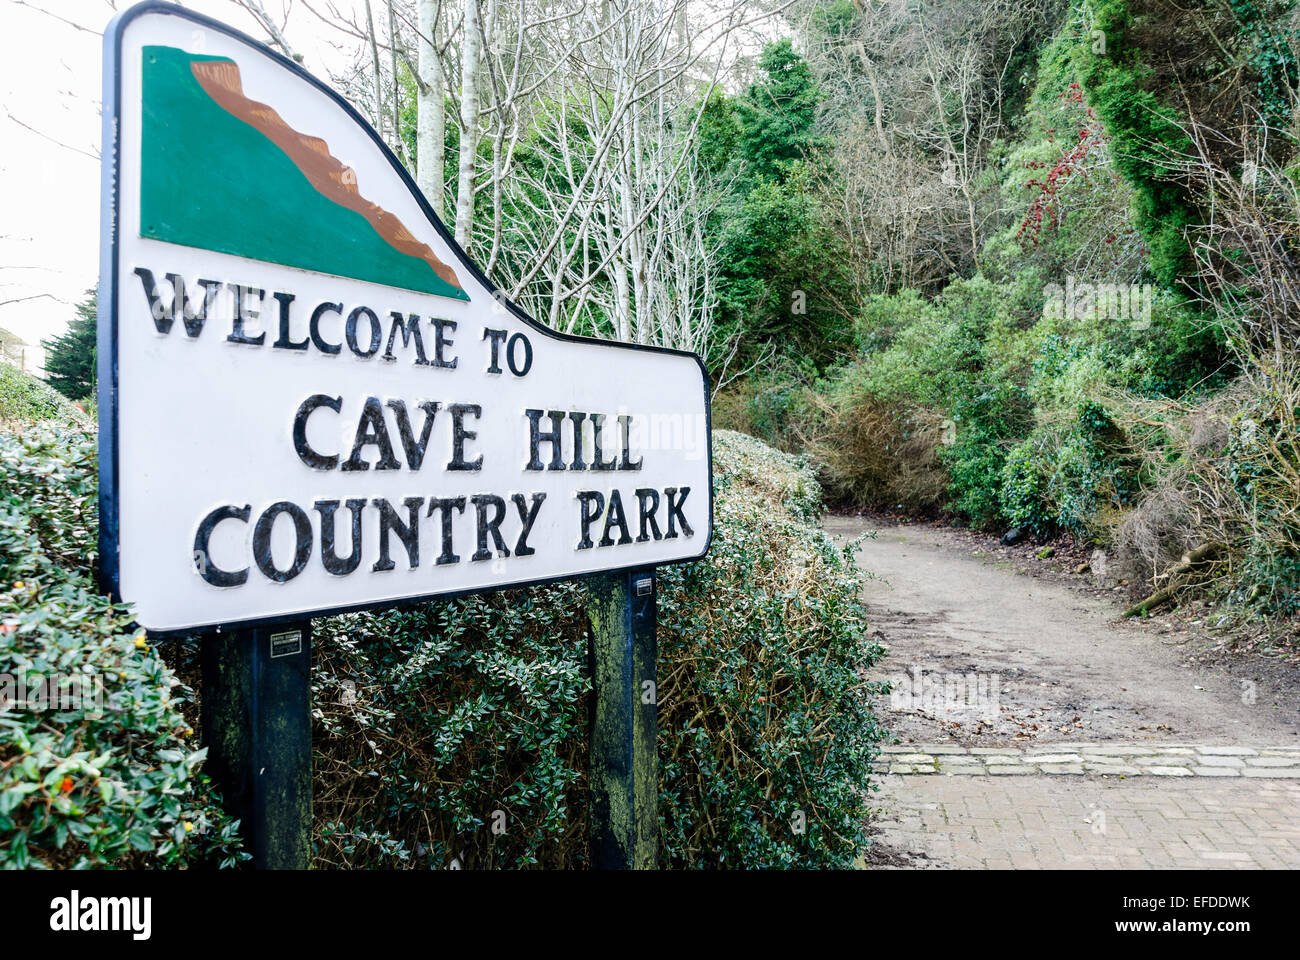 Cave hill country park immagini e fotografie stock ad alta risoluzione -  Alamy